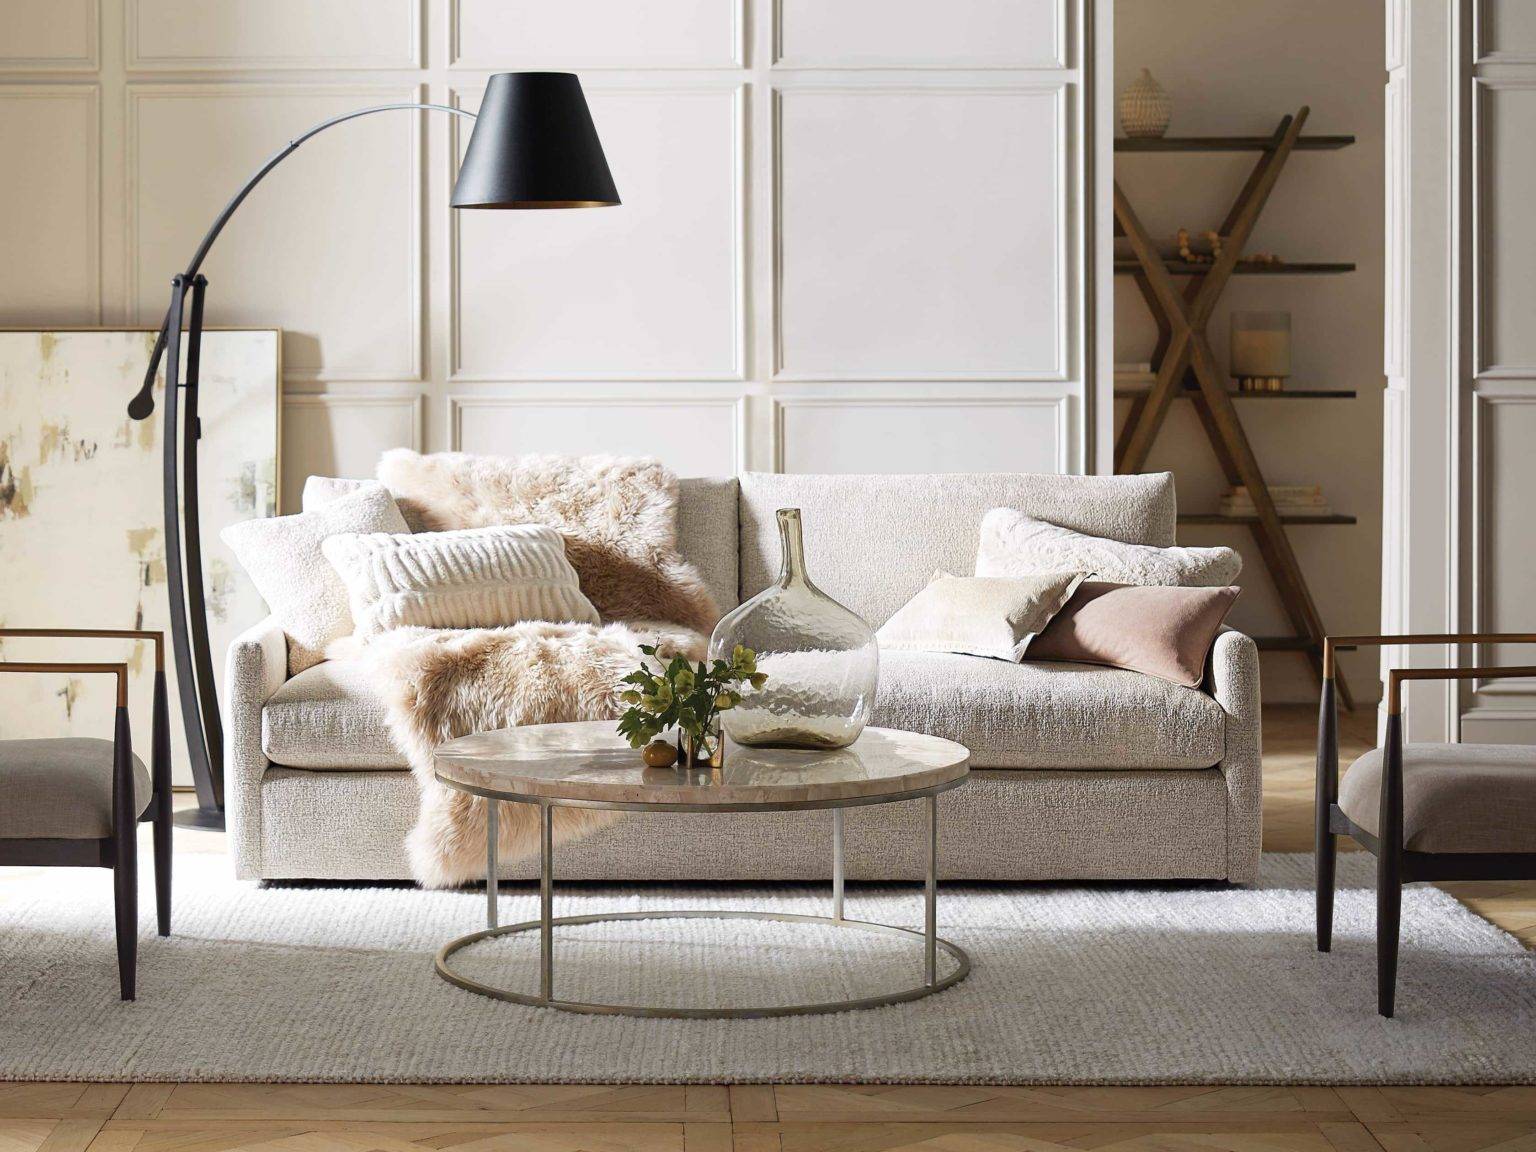 Kipton Sofa với tay vịn thấp là lựa chọn phù hợp cho những không gian nhỏ hẹp. Nó trông ấm cúng và thân thiện, linh hoạt để phù hợp với nhiều phong cách khác nhau.